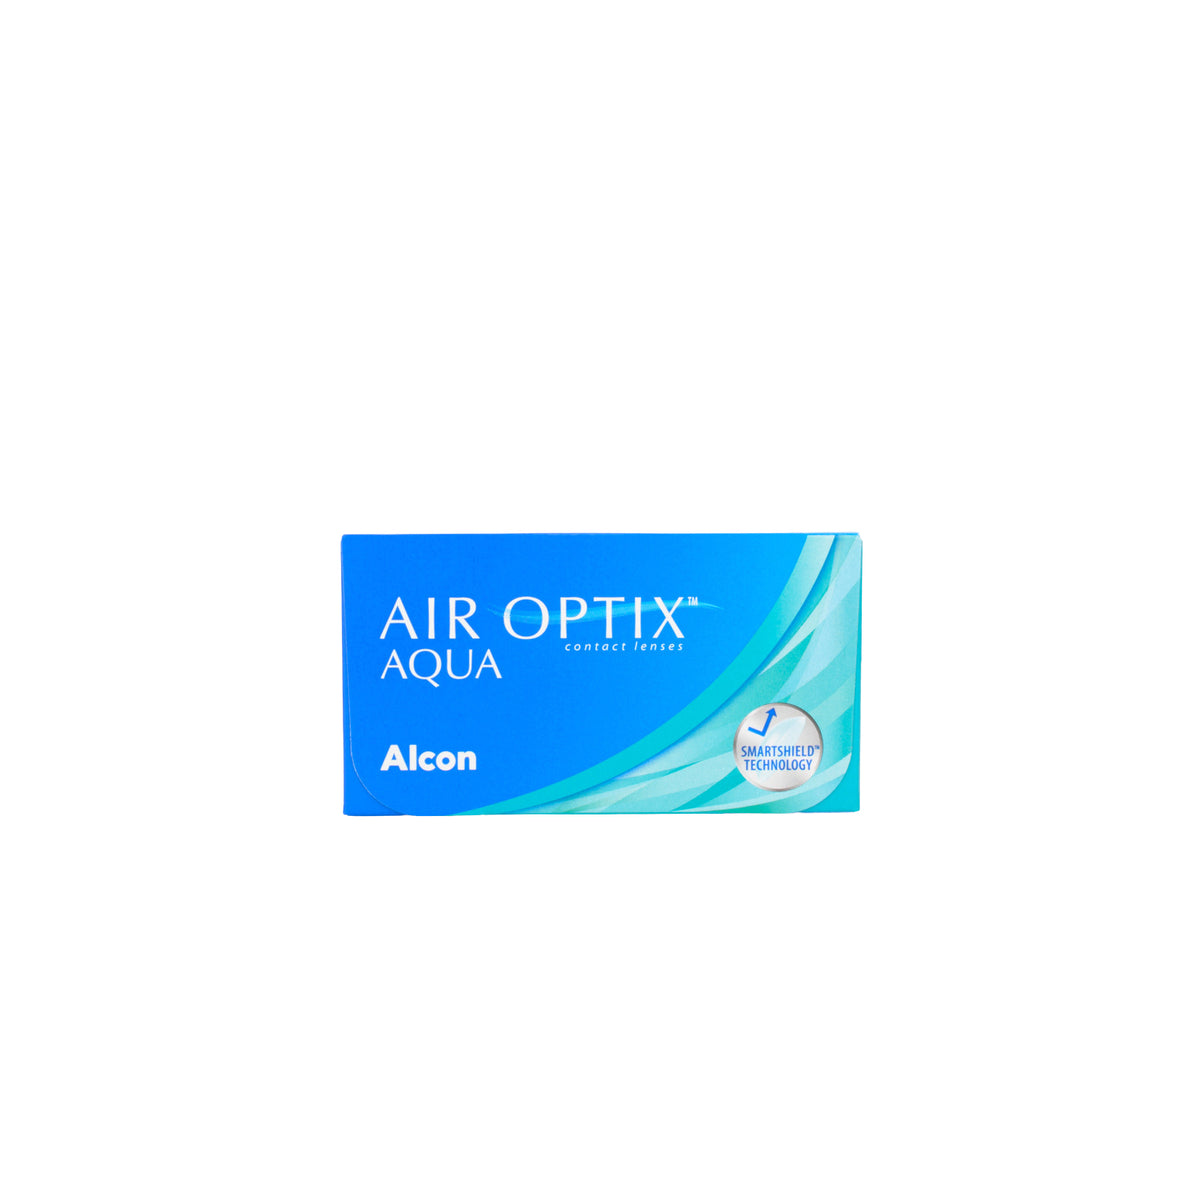 Air Optix Aqua 6 Contact Lenses Alcon   